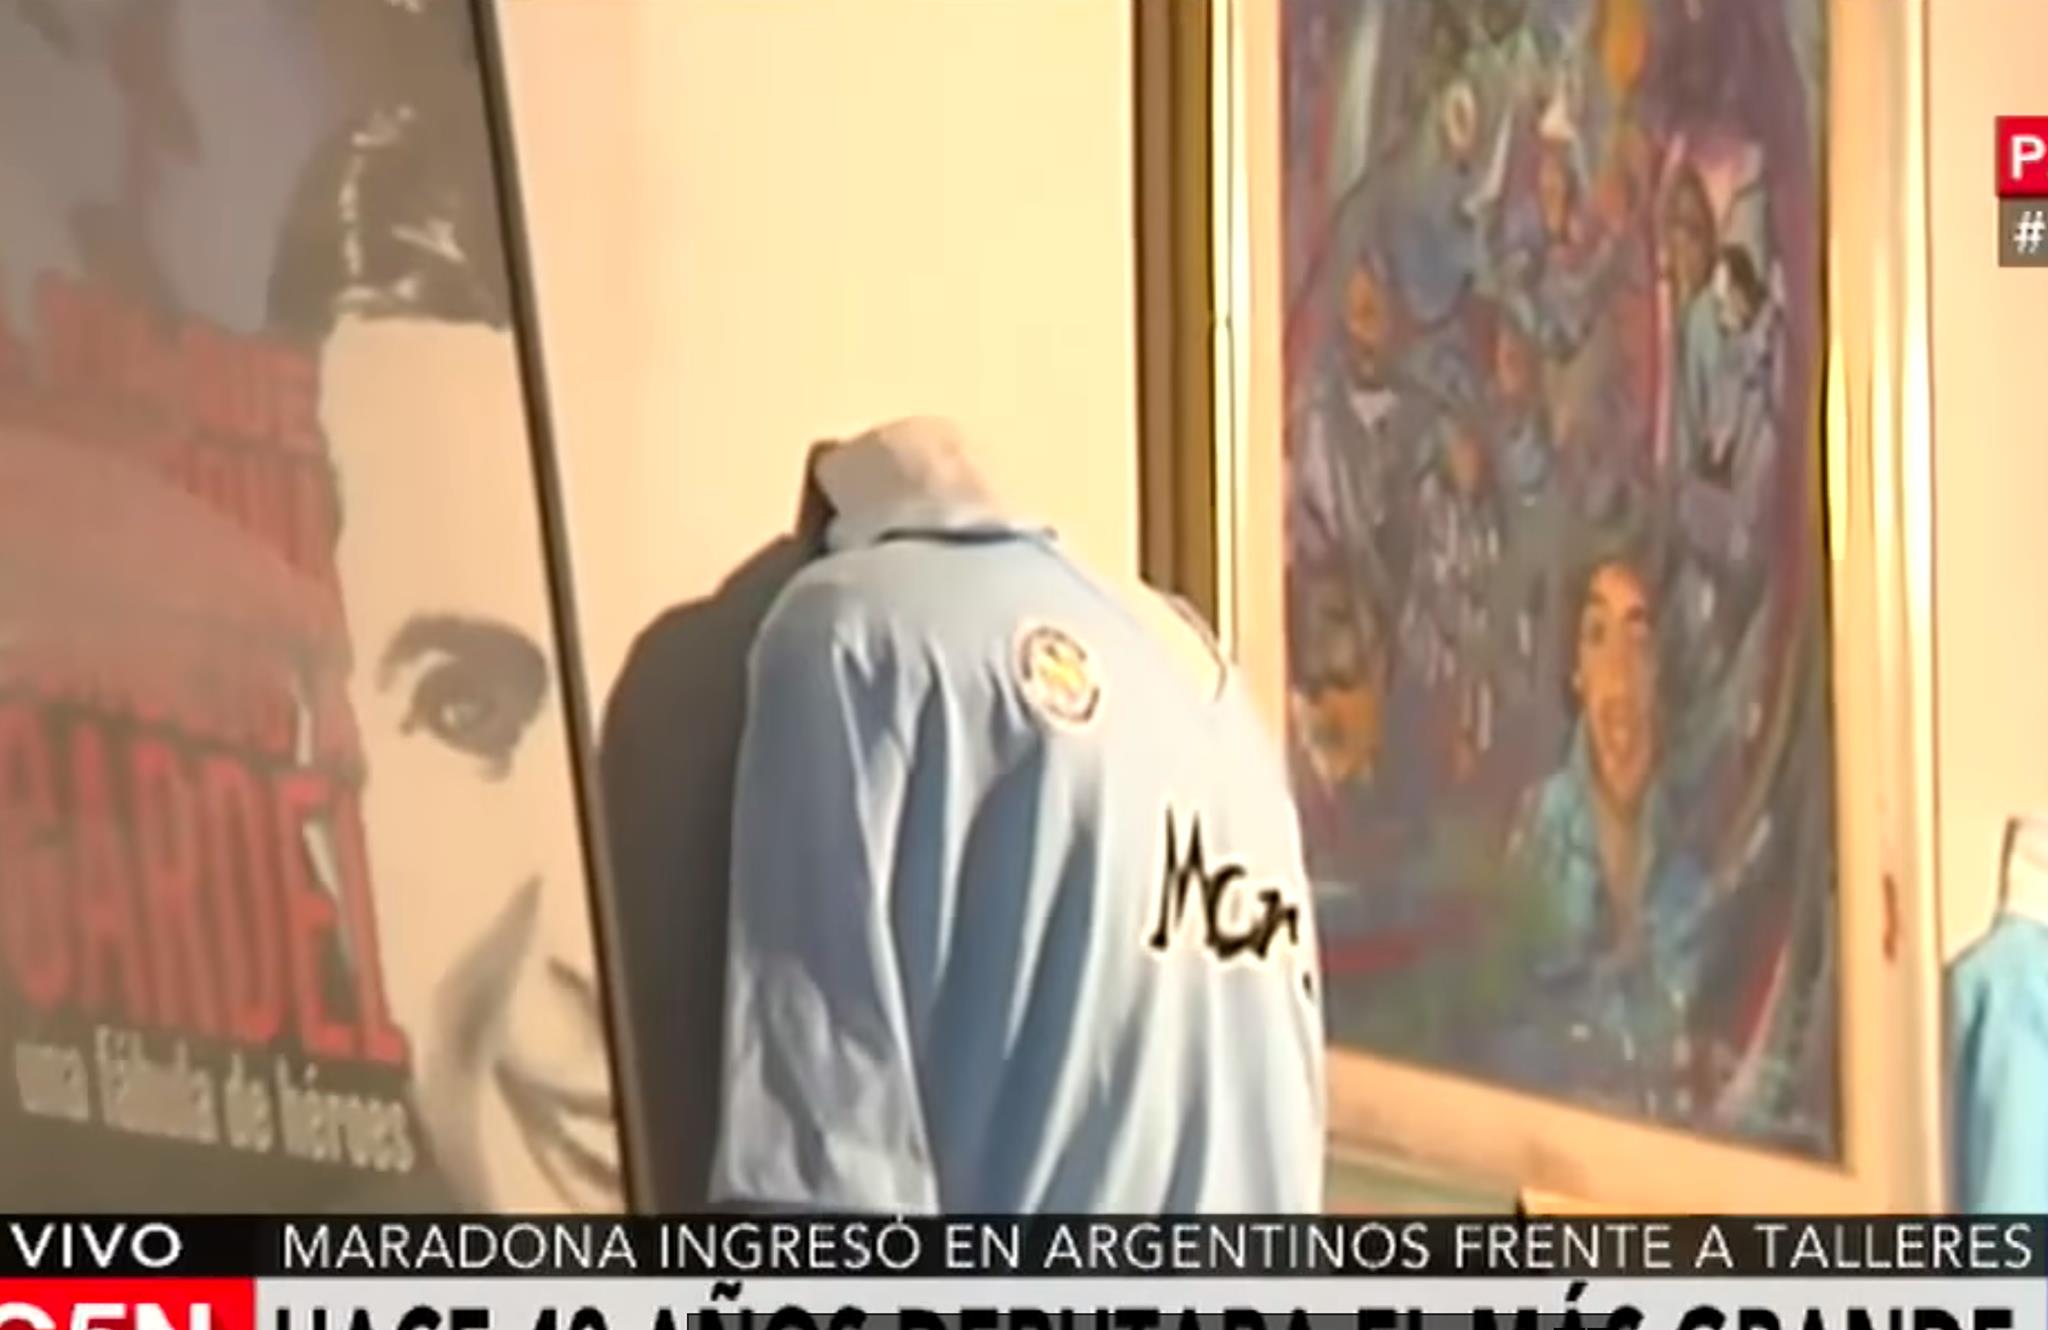 Il maestro Cuono Gaglione esporrà 25 opere su Maradona nella casa-museo a La Paternal